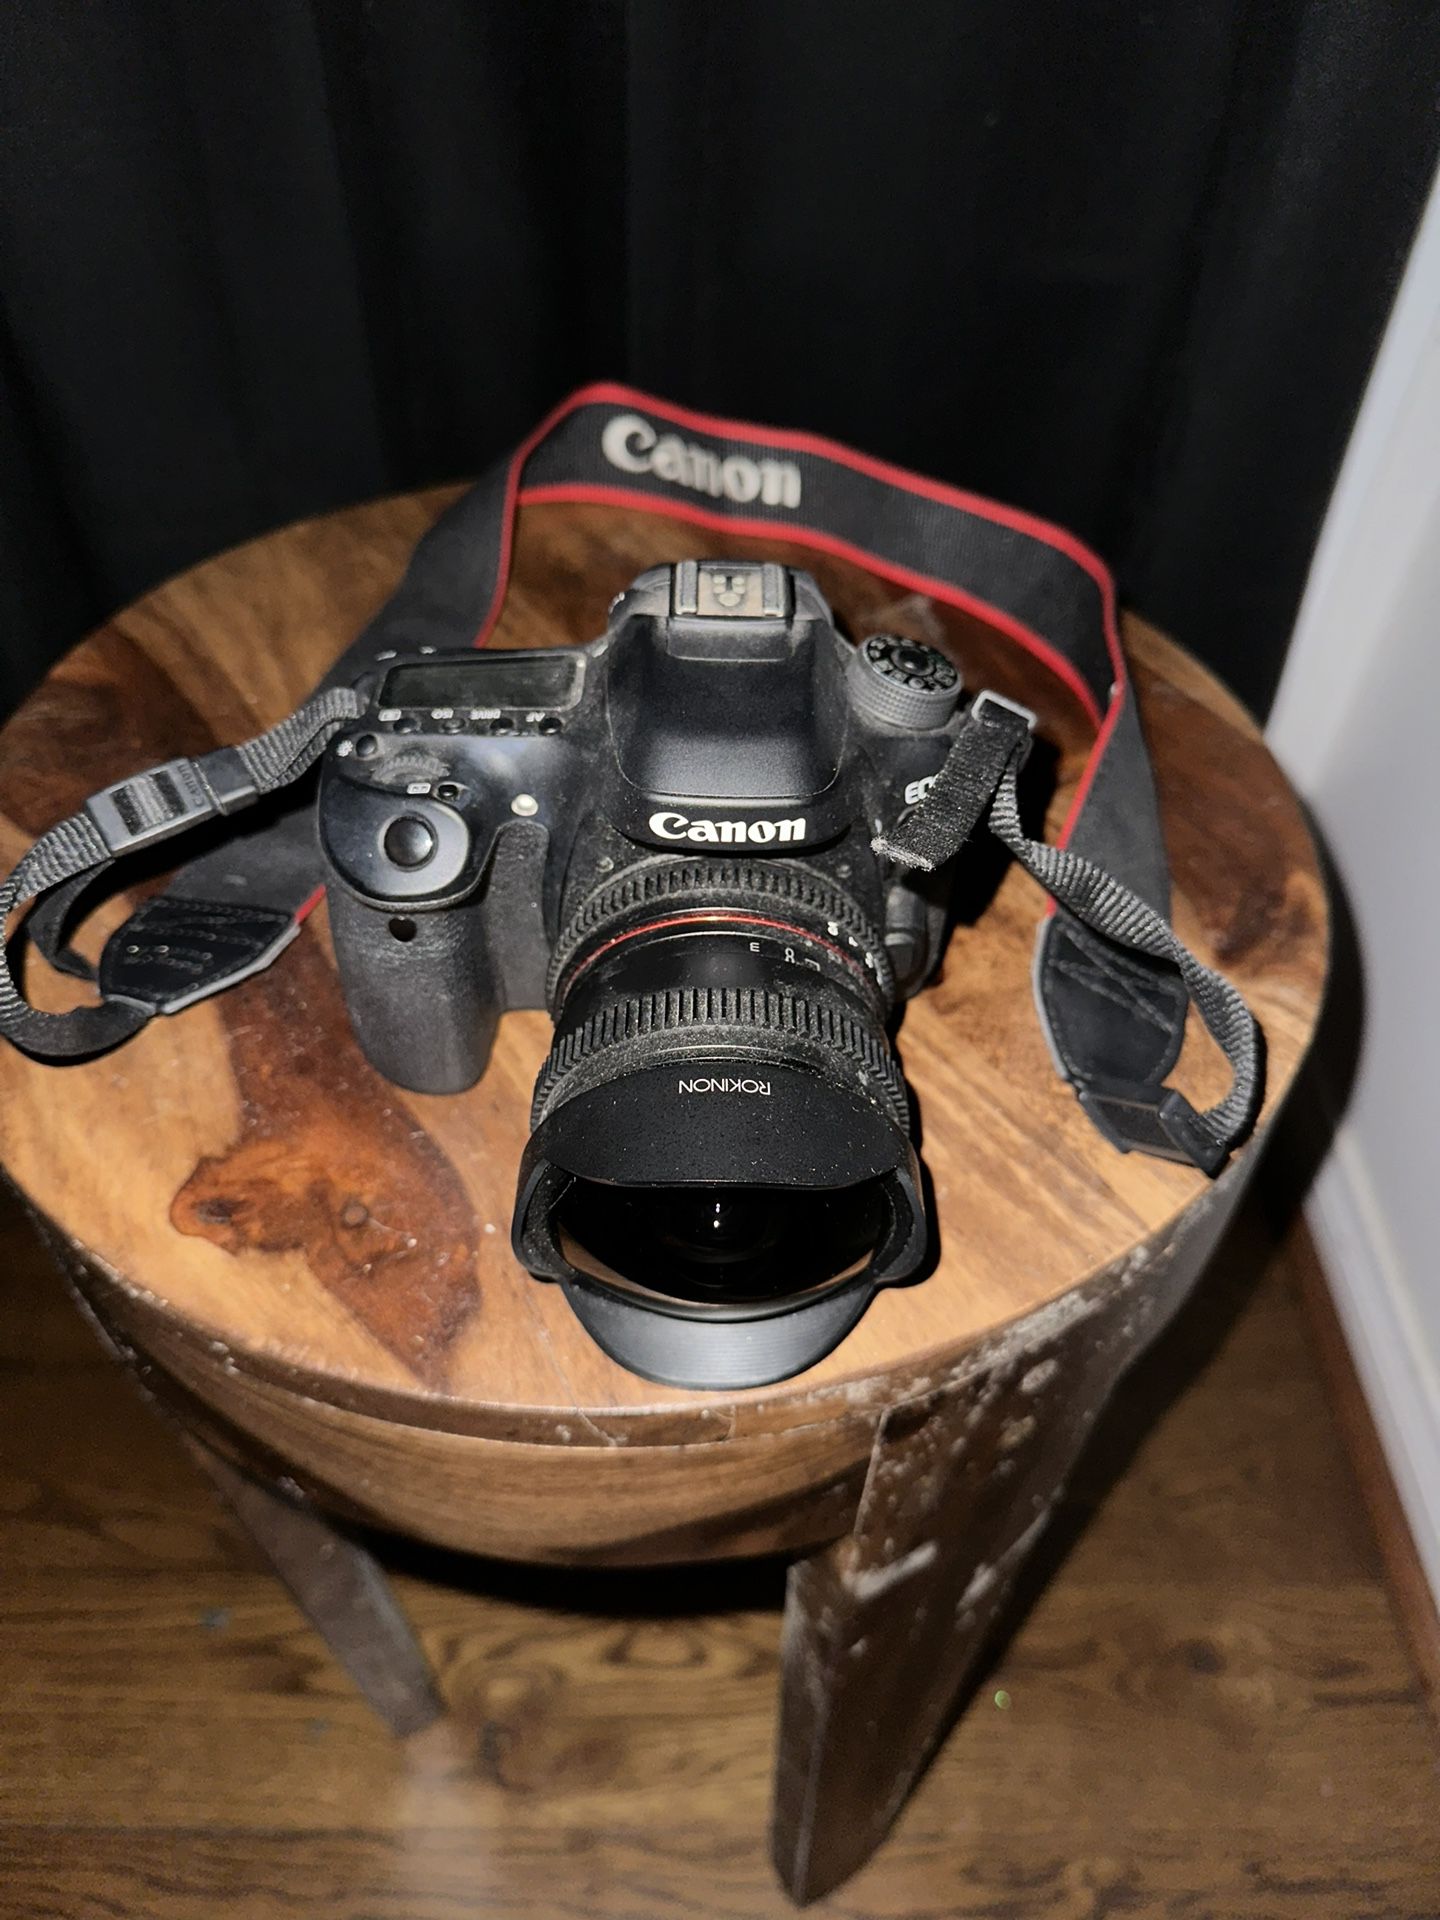 Canon 80d With 3 Premium Lenses